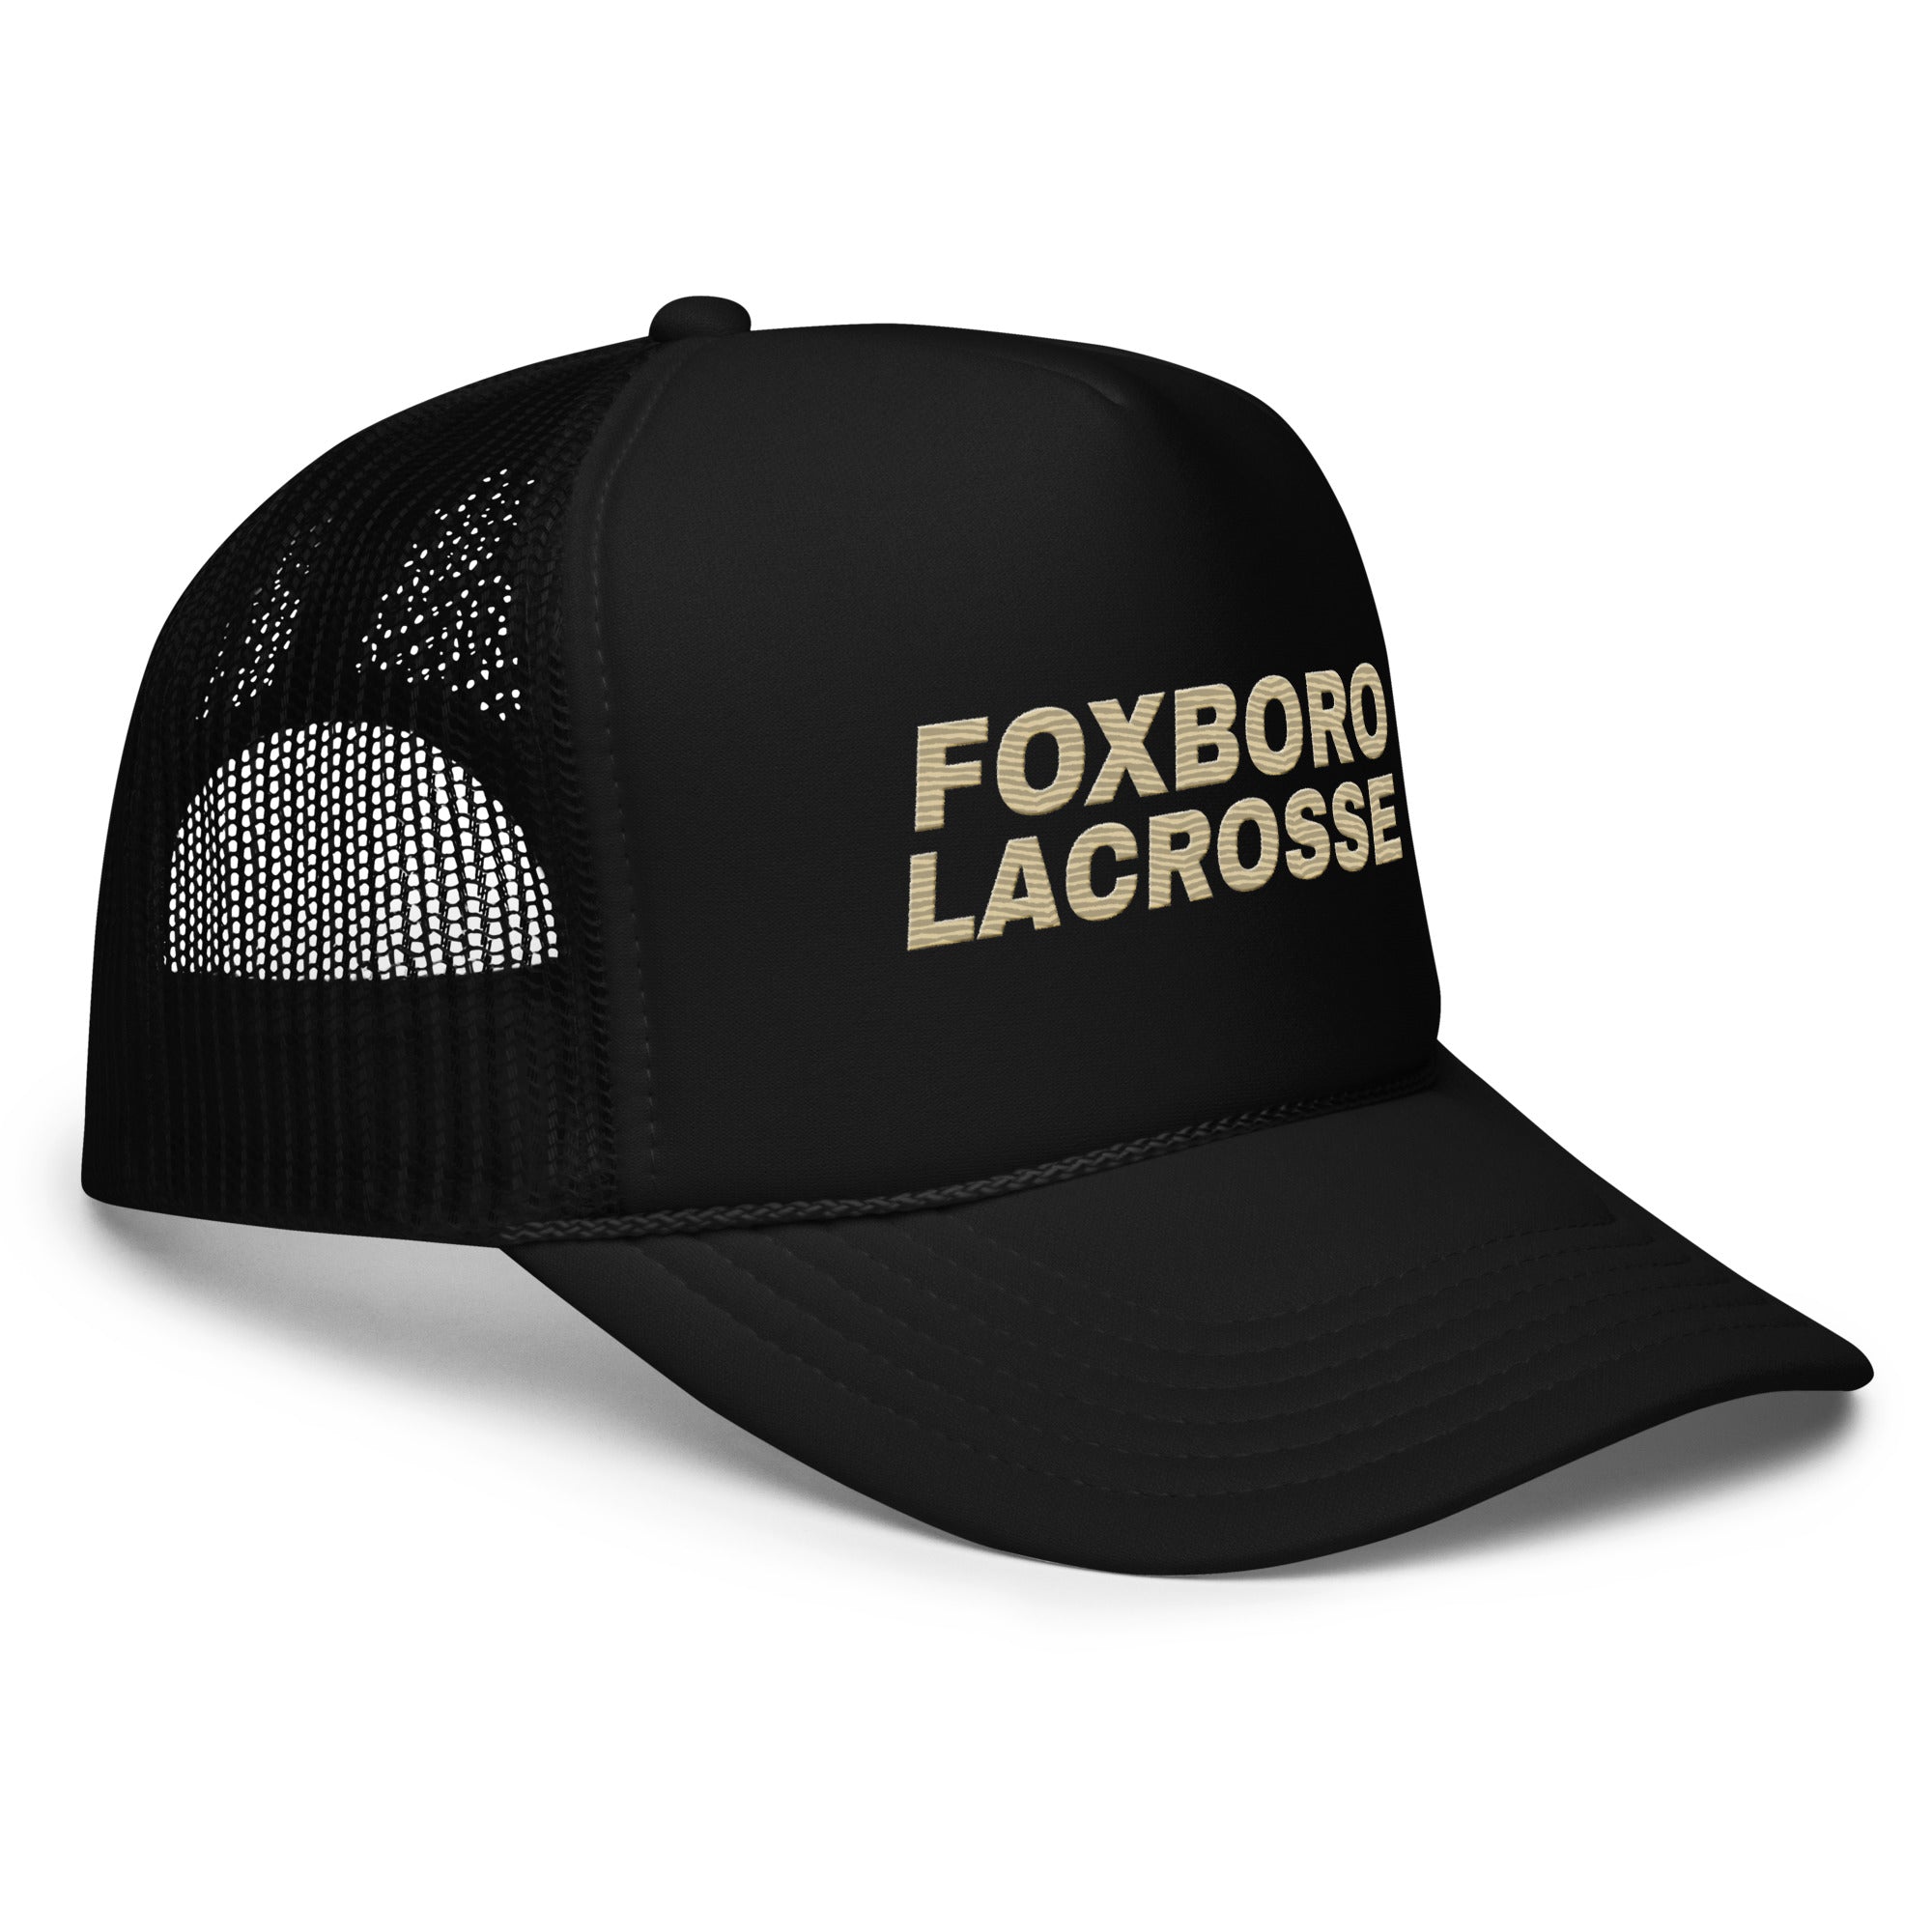 Foxboro Foam trucker hat